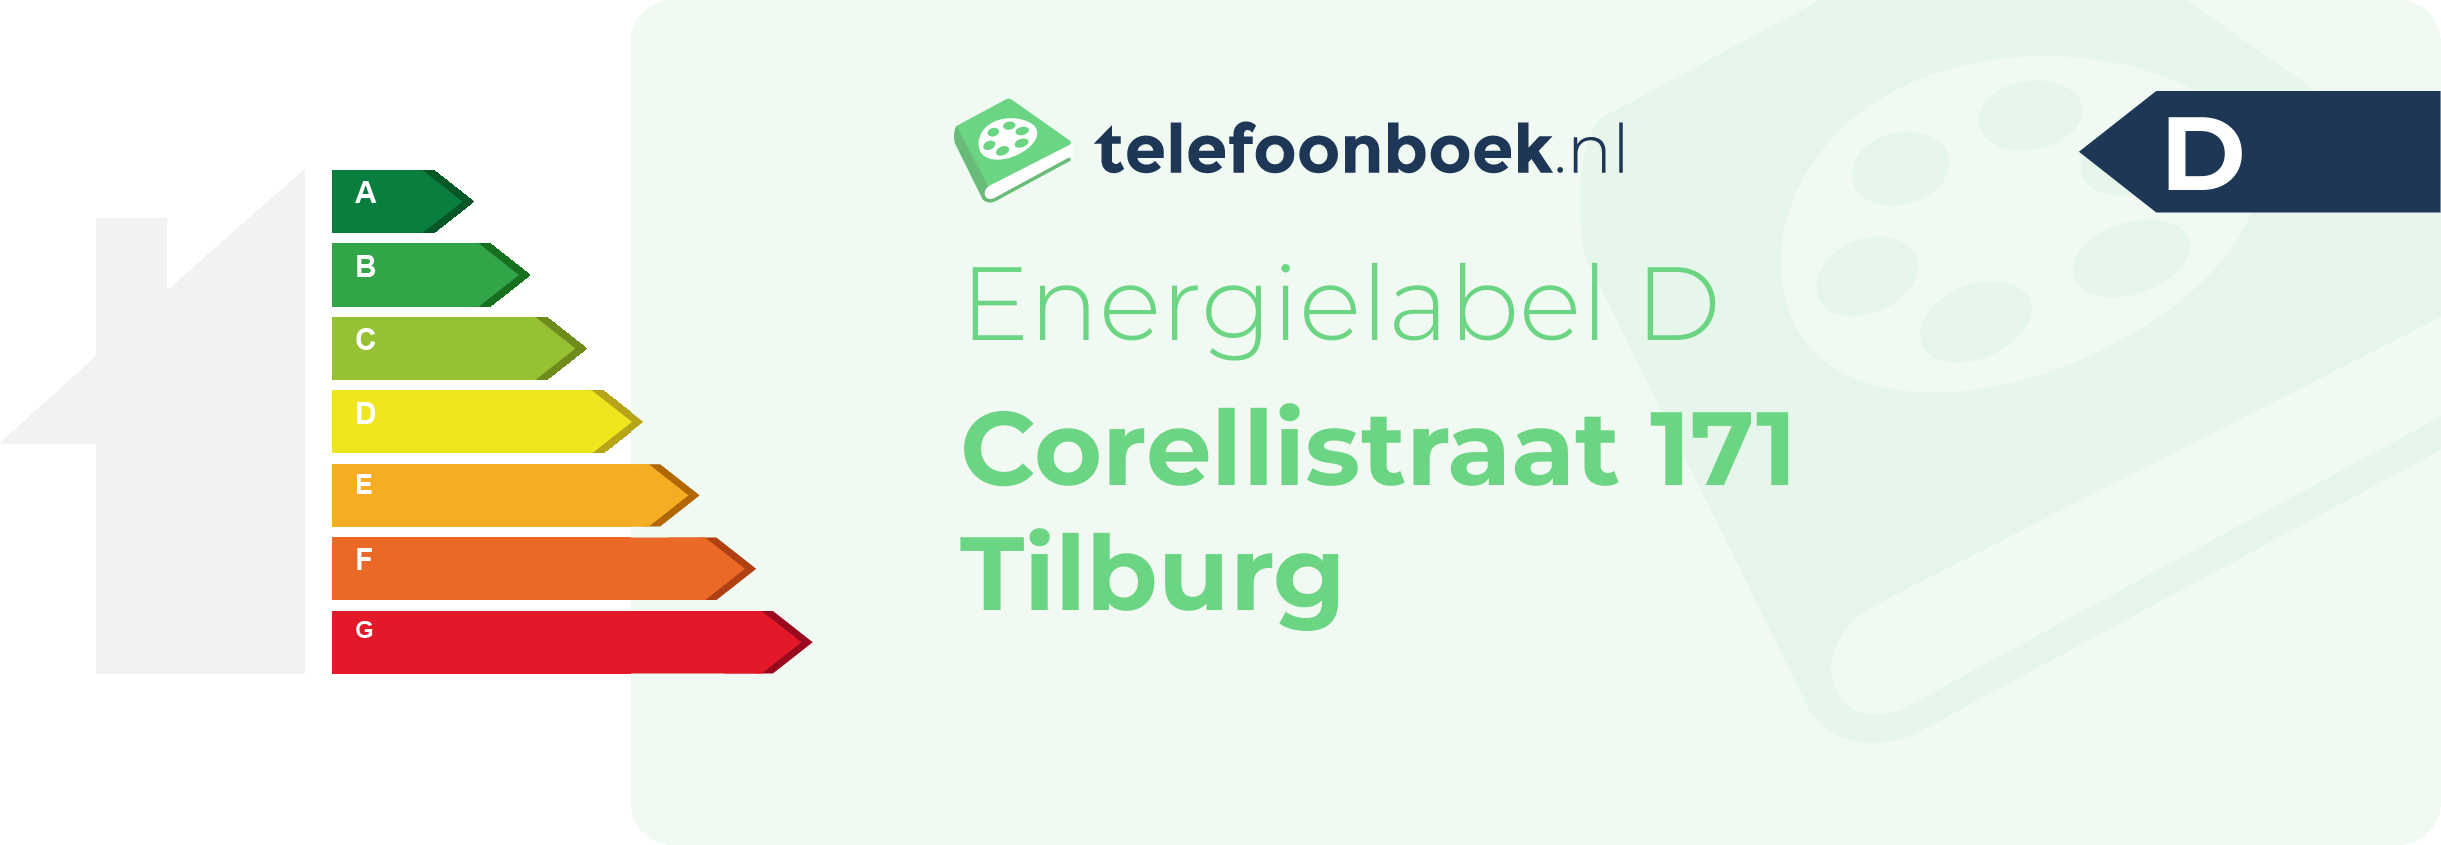 Energielabel Corellistraat 171 Tilburg